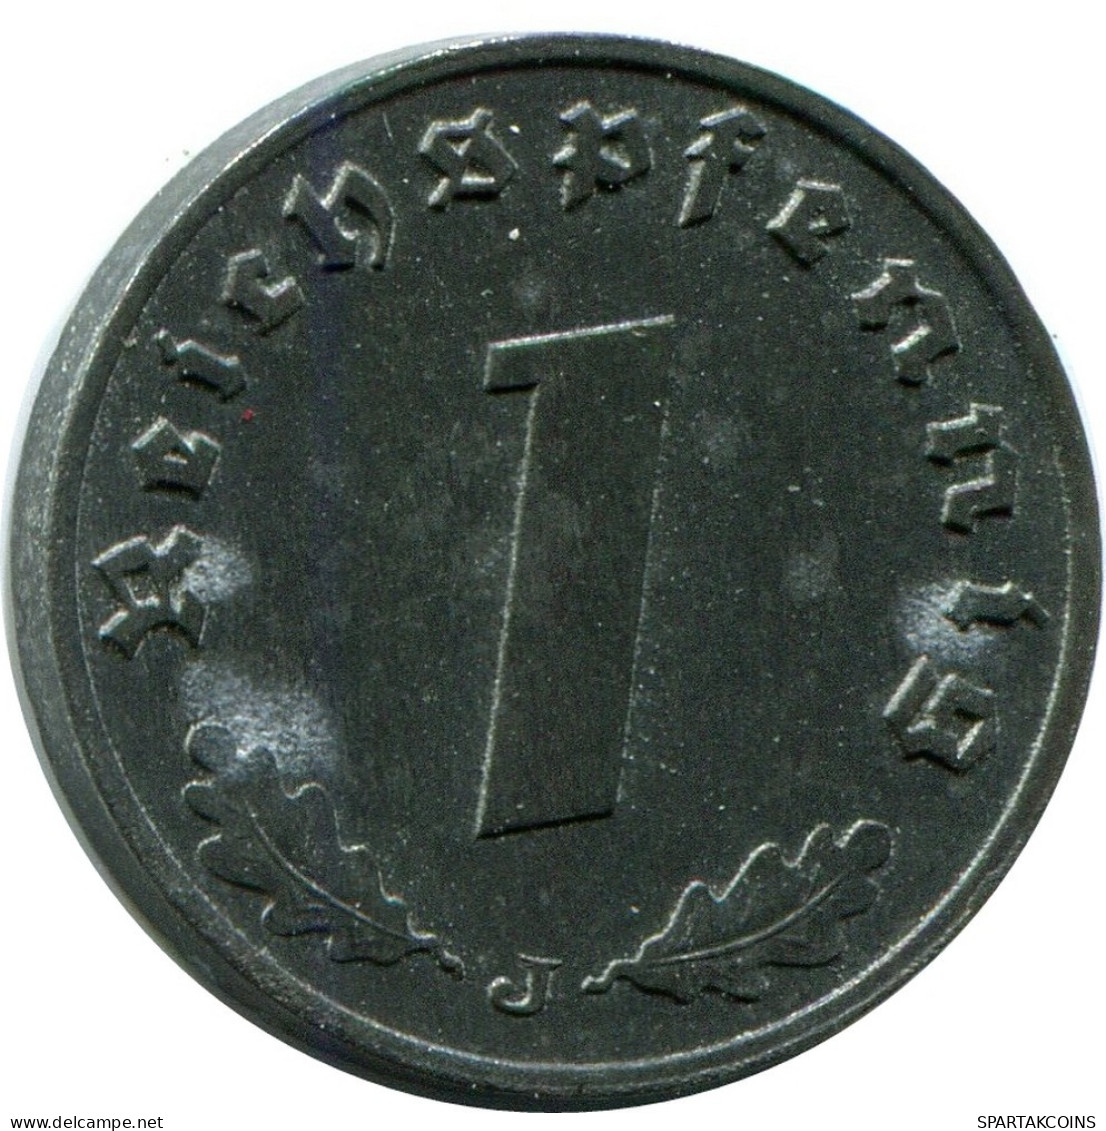 1 REICHSPFENNIG 1942 J GERMANY Coin #DB815.U.A - 1 Reichspfennig